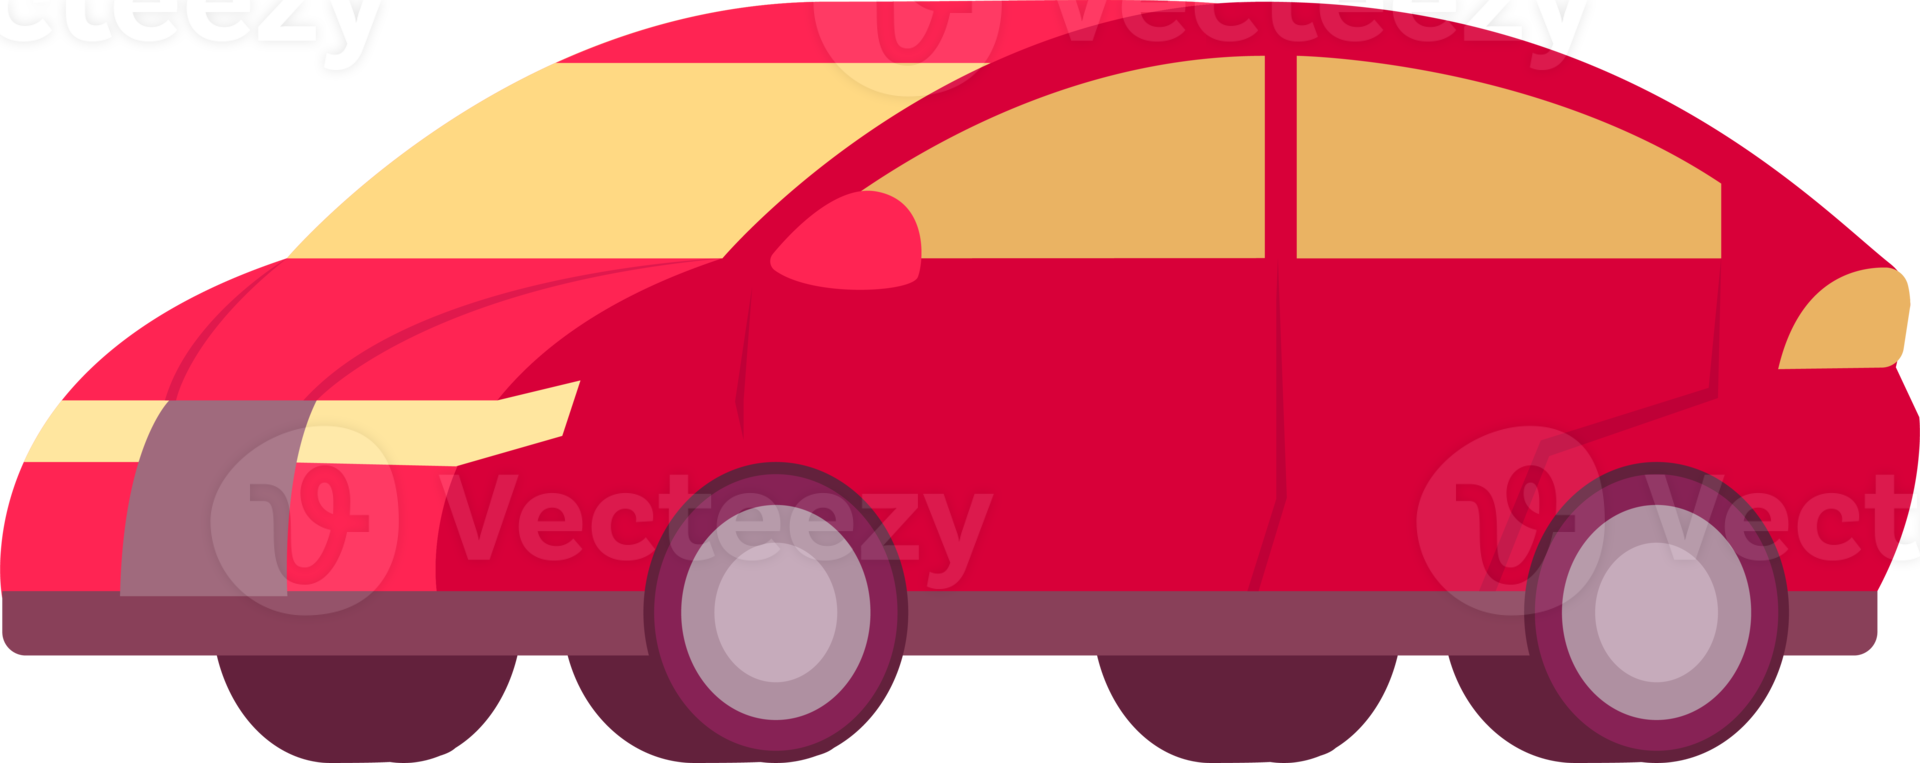 ilustración de coche colorido. automóvil de estilo plano. proyección de perfil, vista lateral. png con fondo transparente.